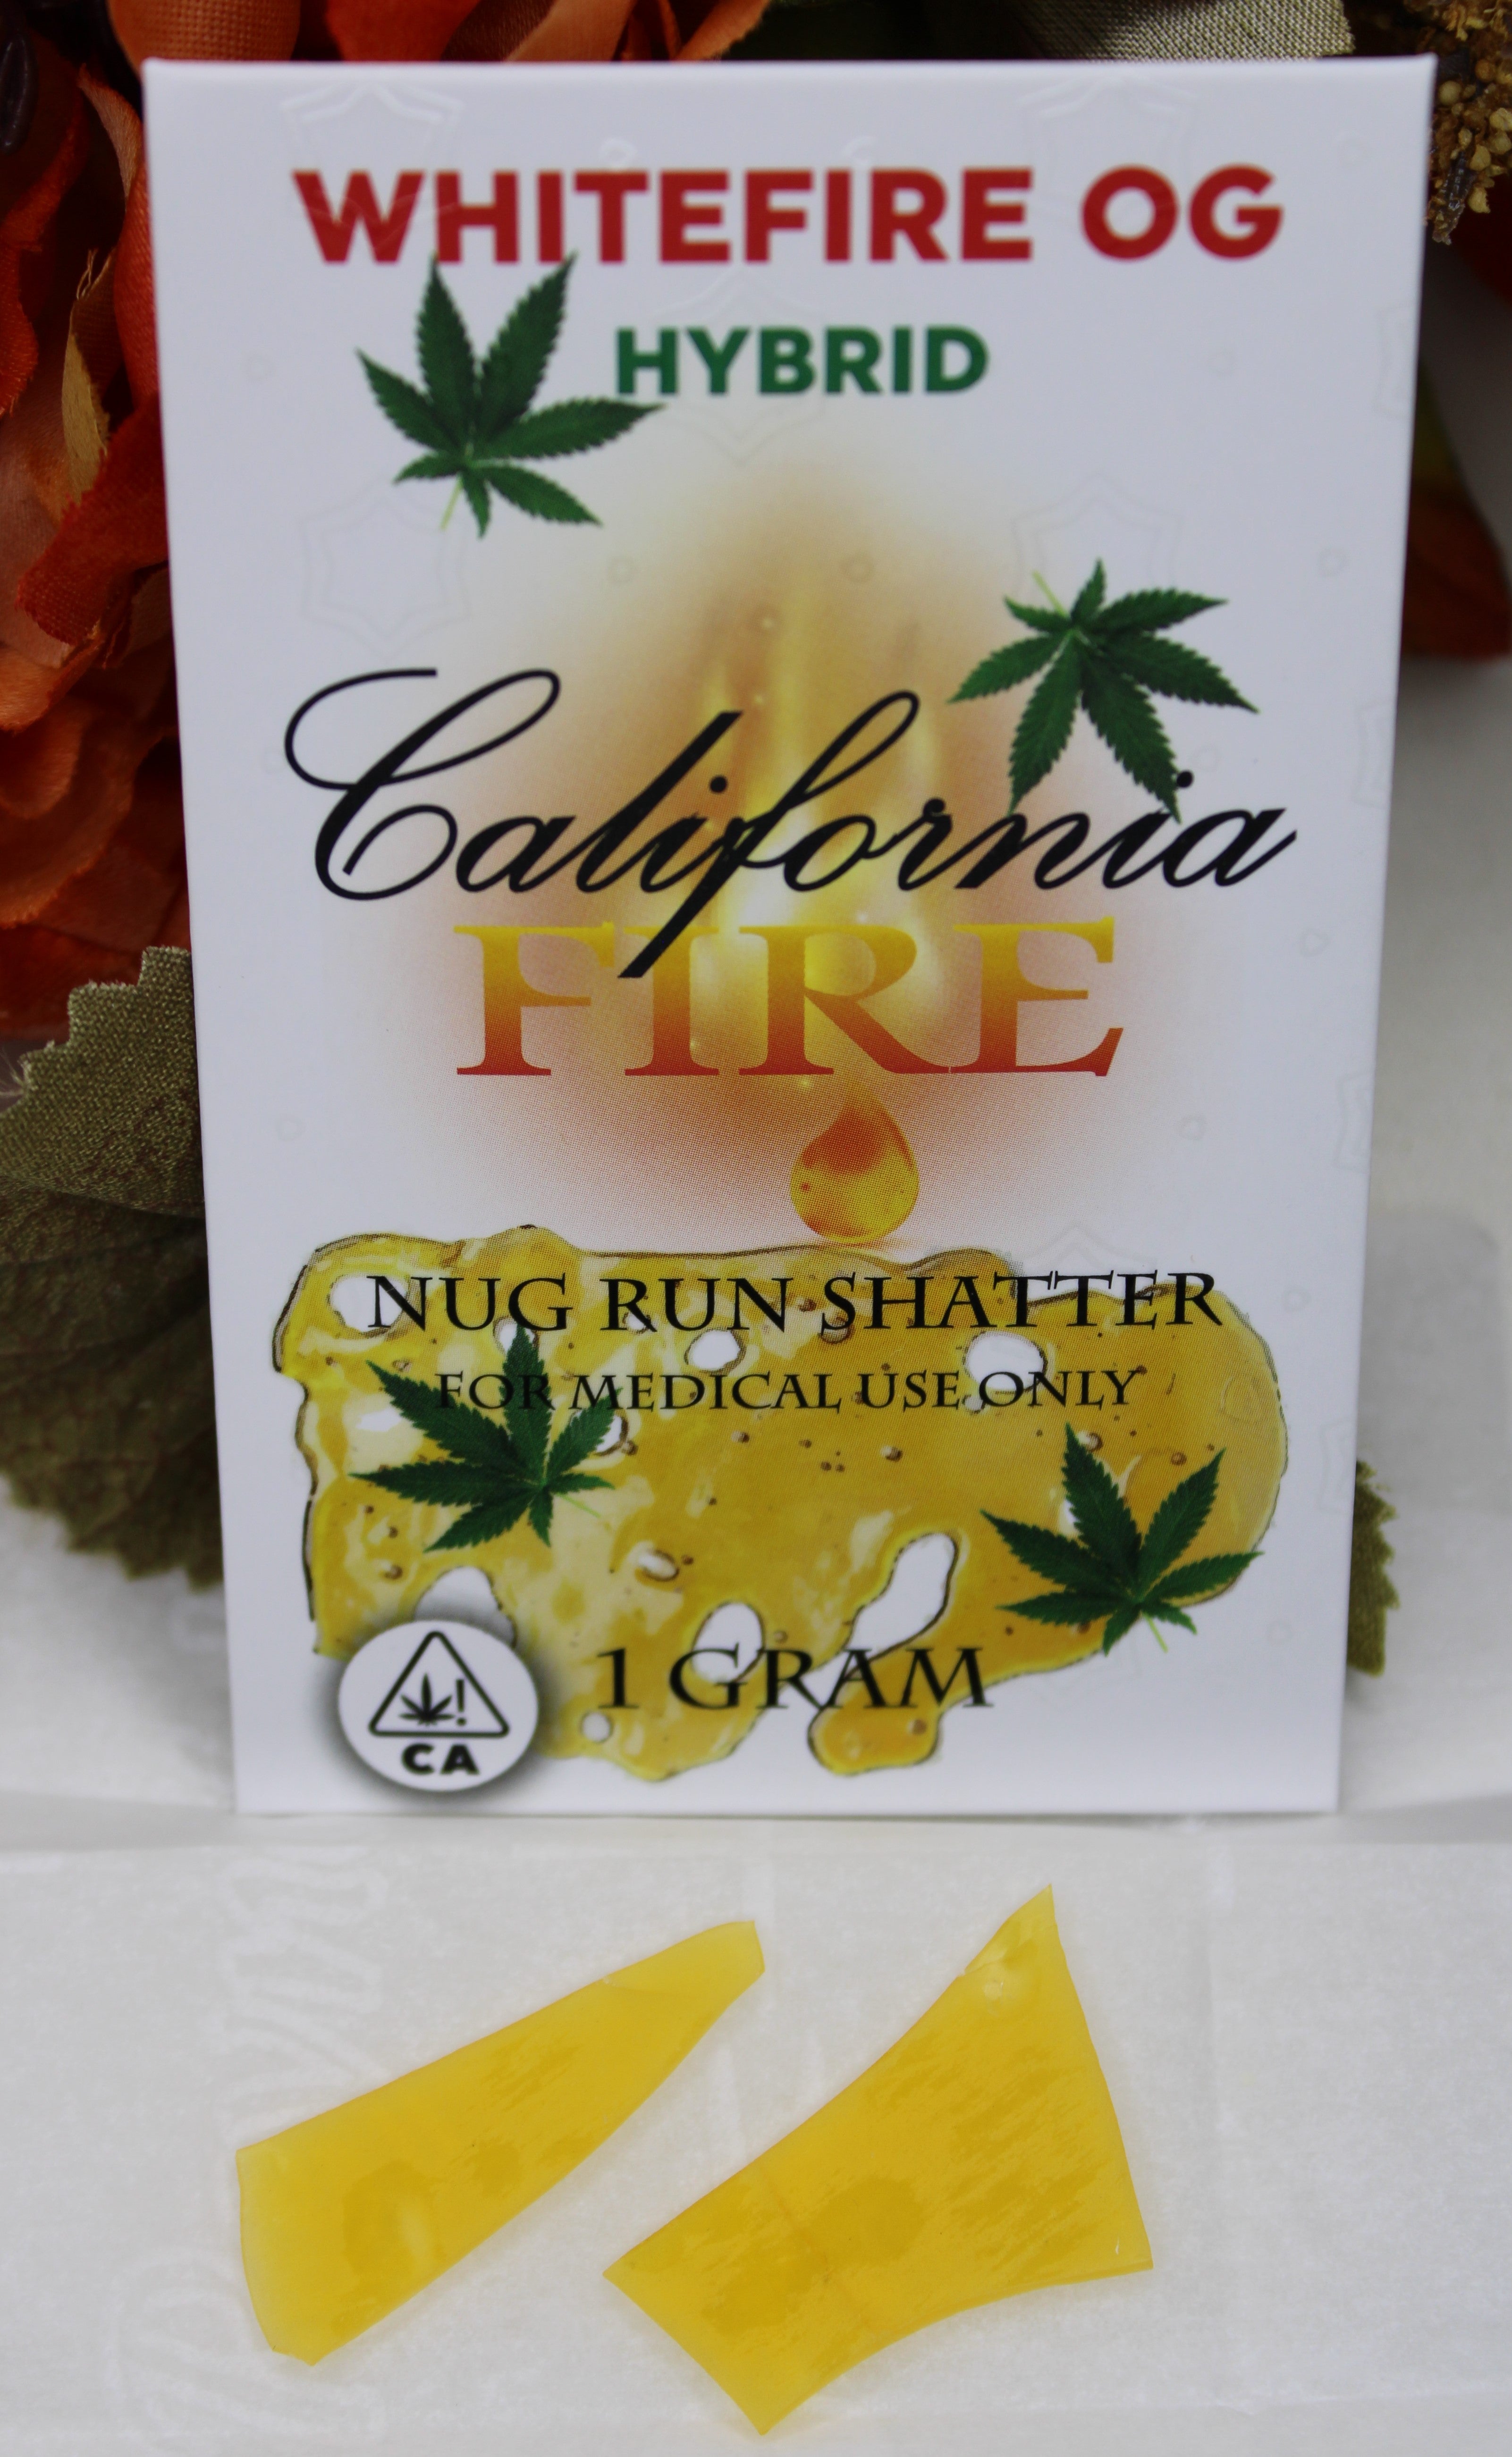 California Fire Nug Run Shatter "White Fire OG" (1g)